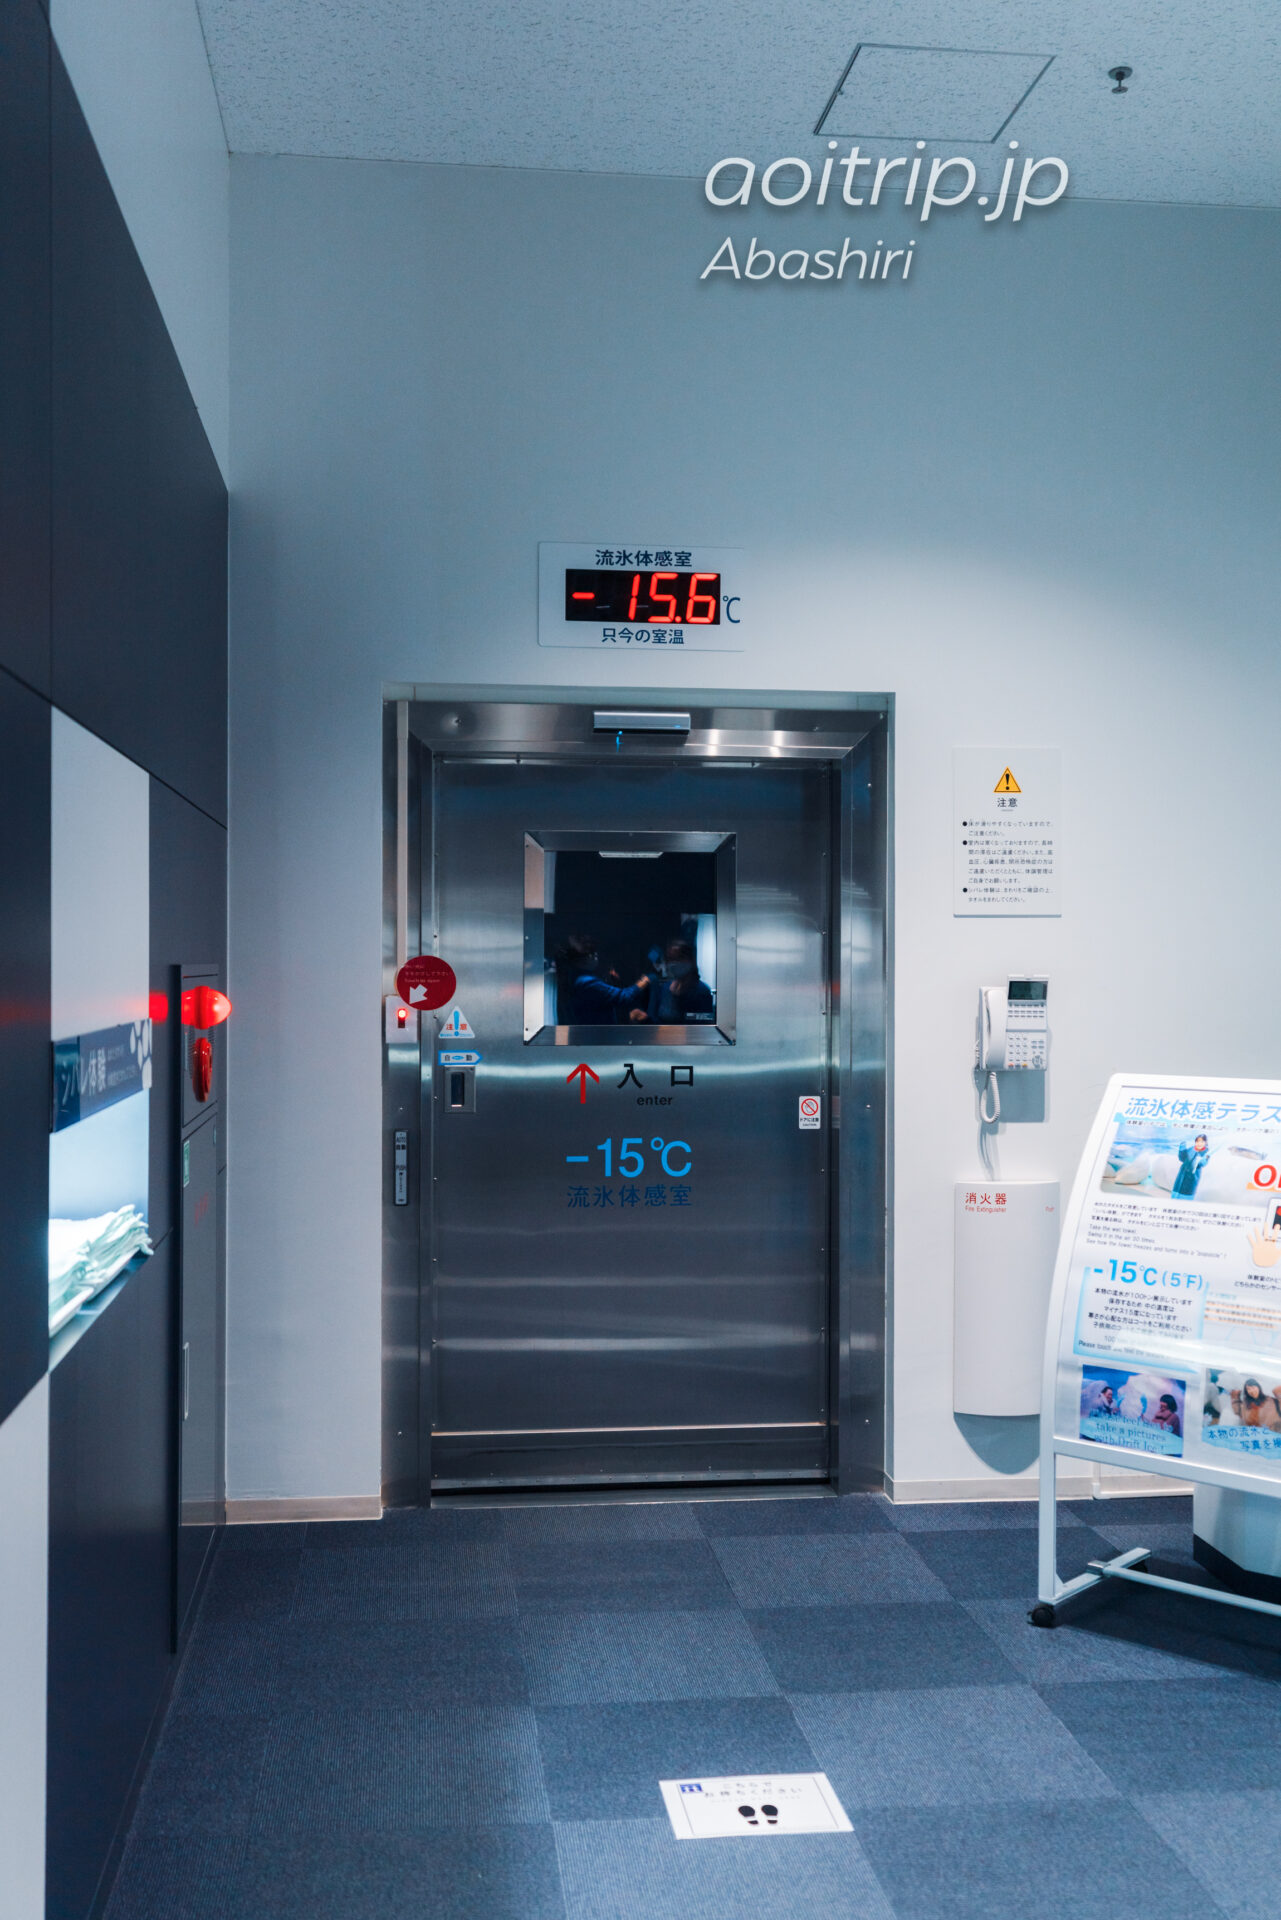 網走のオホーツク流氷館 Okhotsk Ryu-hyo Museum 流氷体感テラス Drift Ice Experience Room -15℃